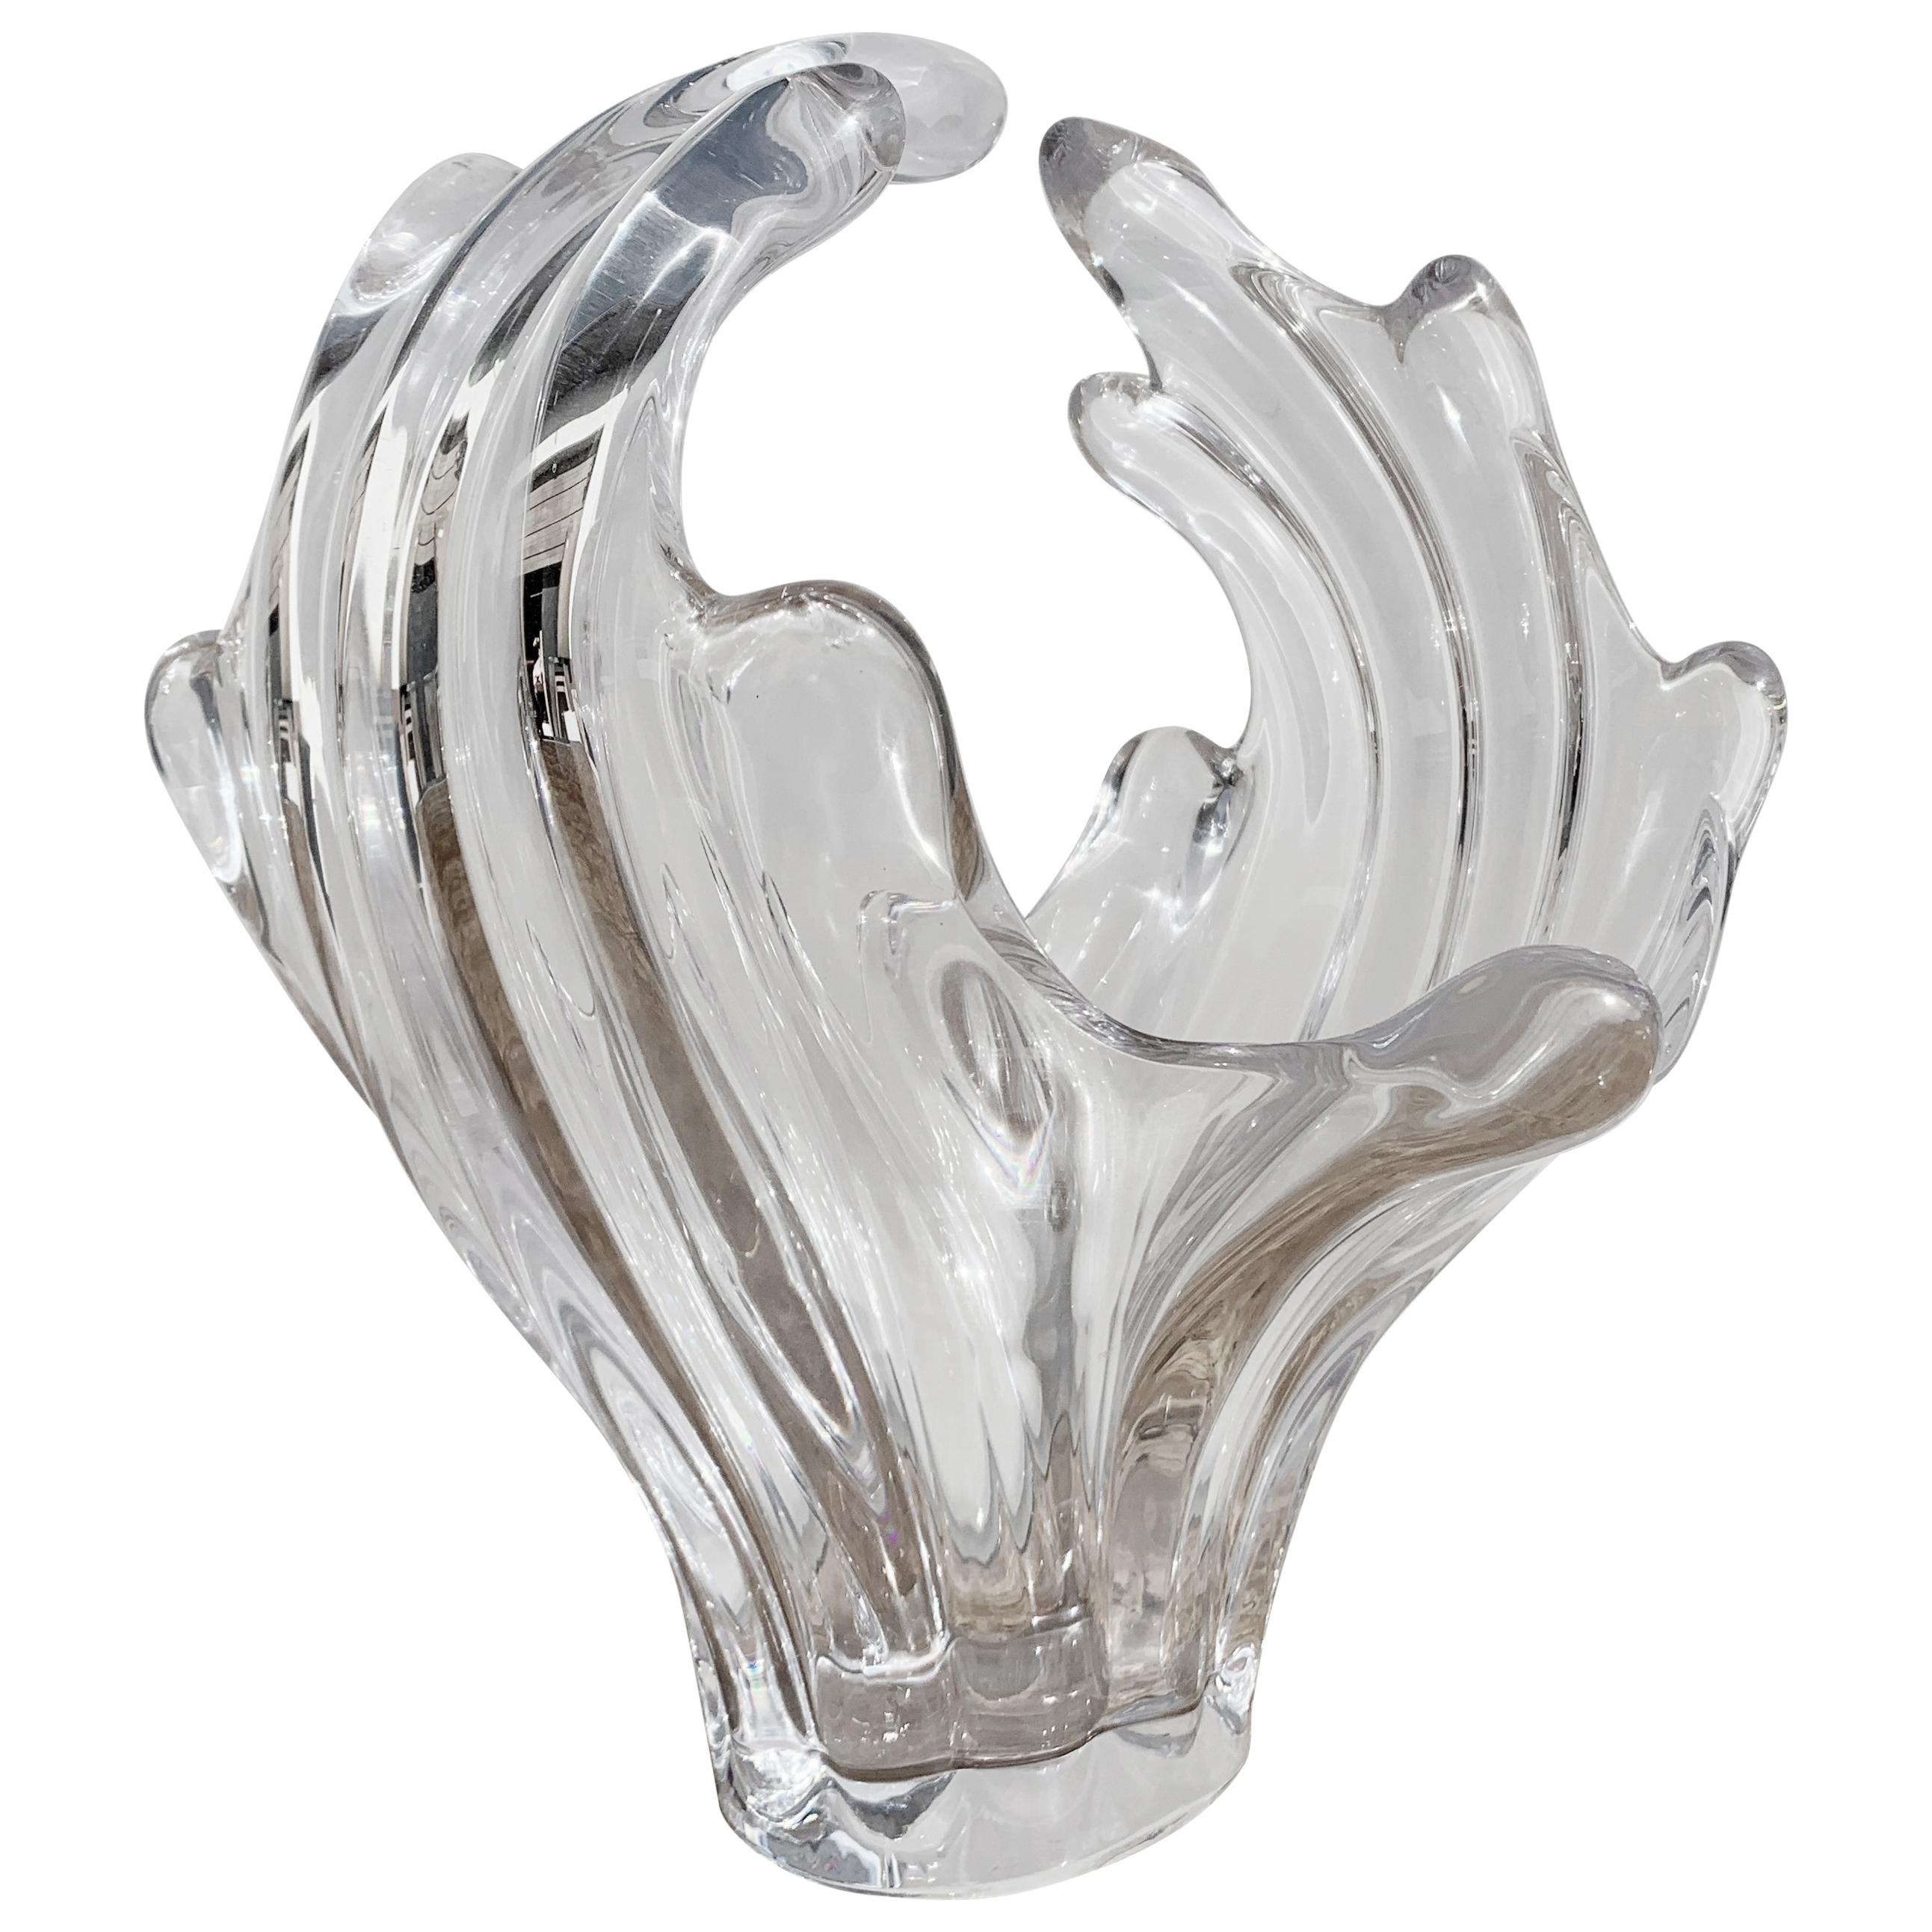 Art Vannes "Le Chantal" Glass Vase